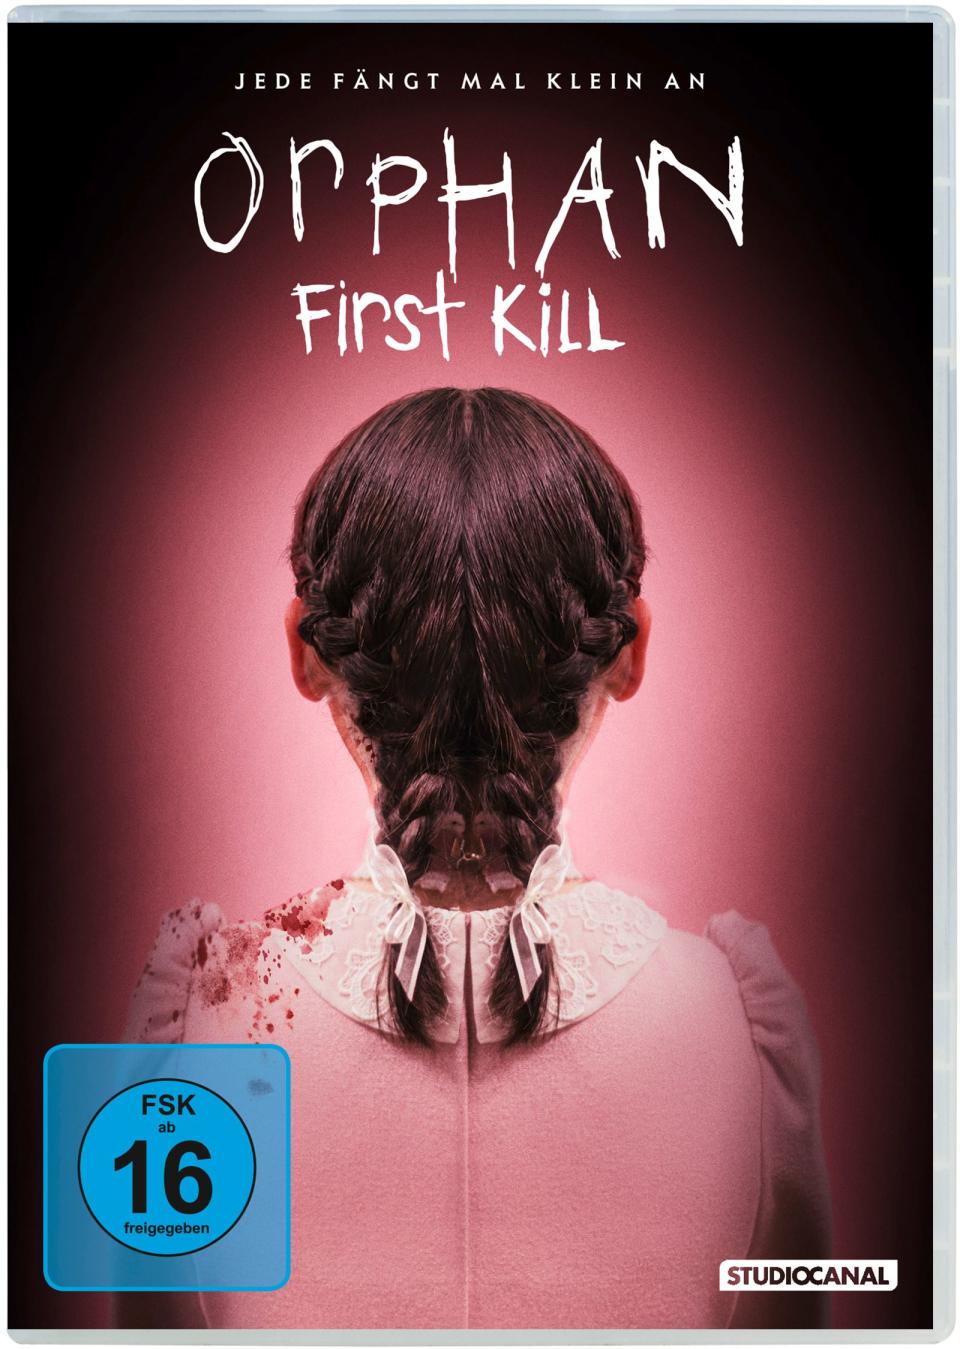 Wer ist dieses Mädchen wirklich? Und was führt sie im Schilde? "Orphan: First Kill" erzählt die Vorgeschichte zu "Orphan - Das Waisenkind", einem Horror-Hit von 2009. (Bild: Studiocanal GmbH / Paramount Pictures)